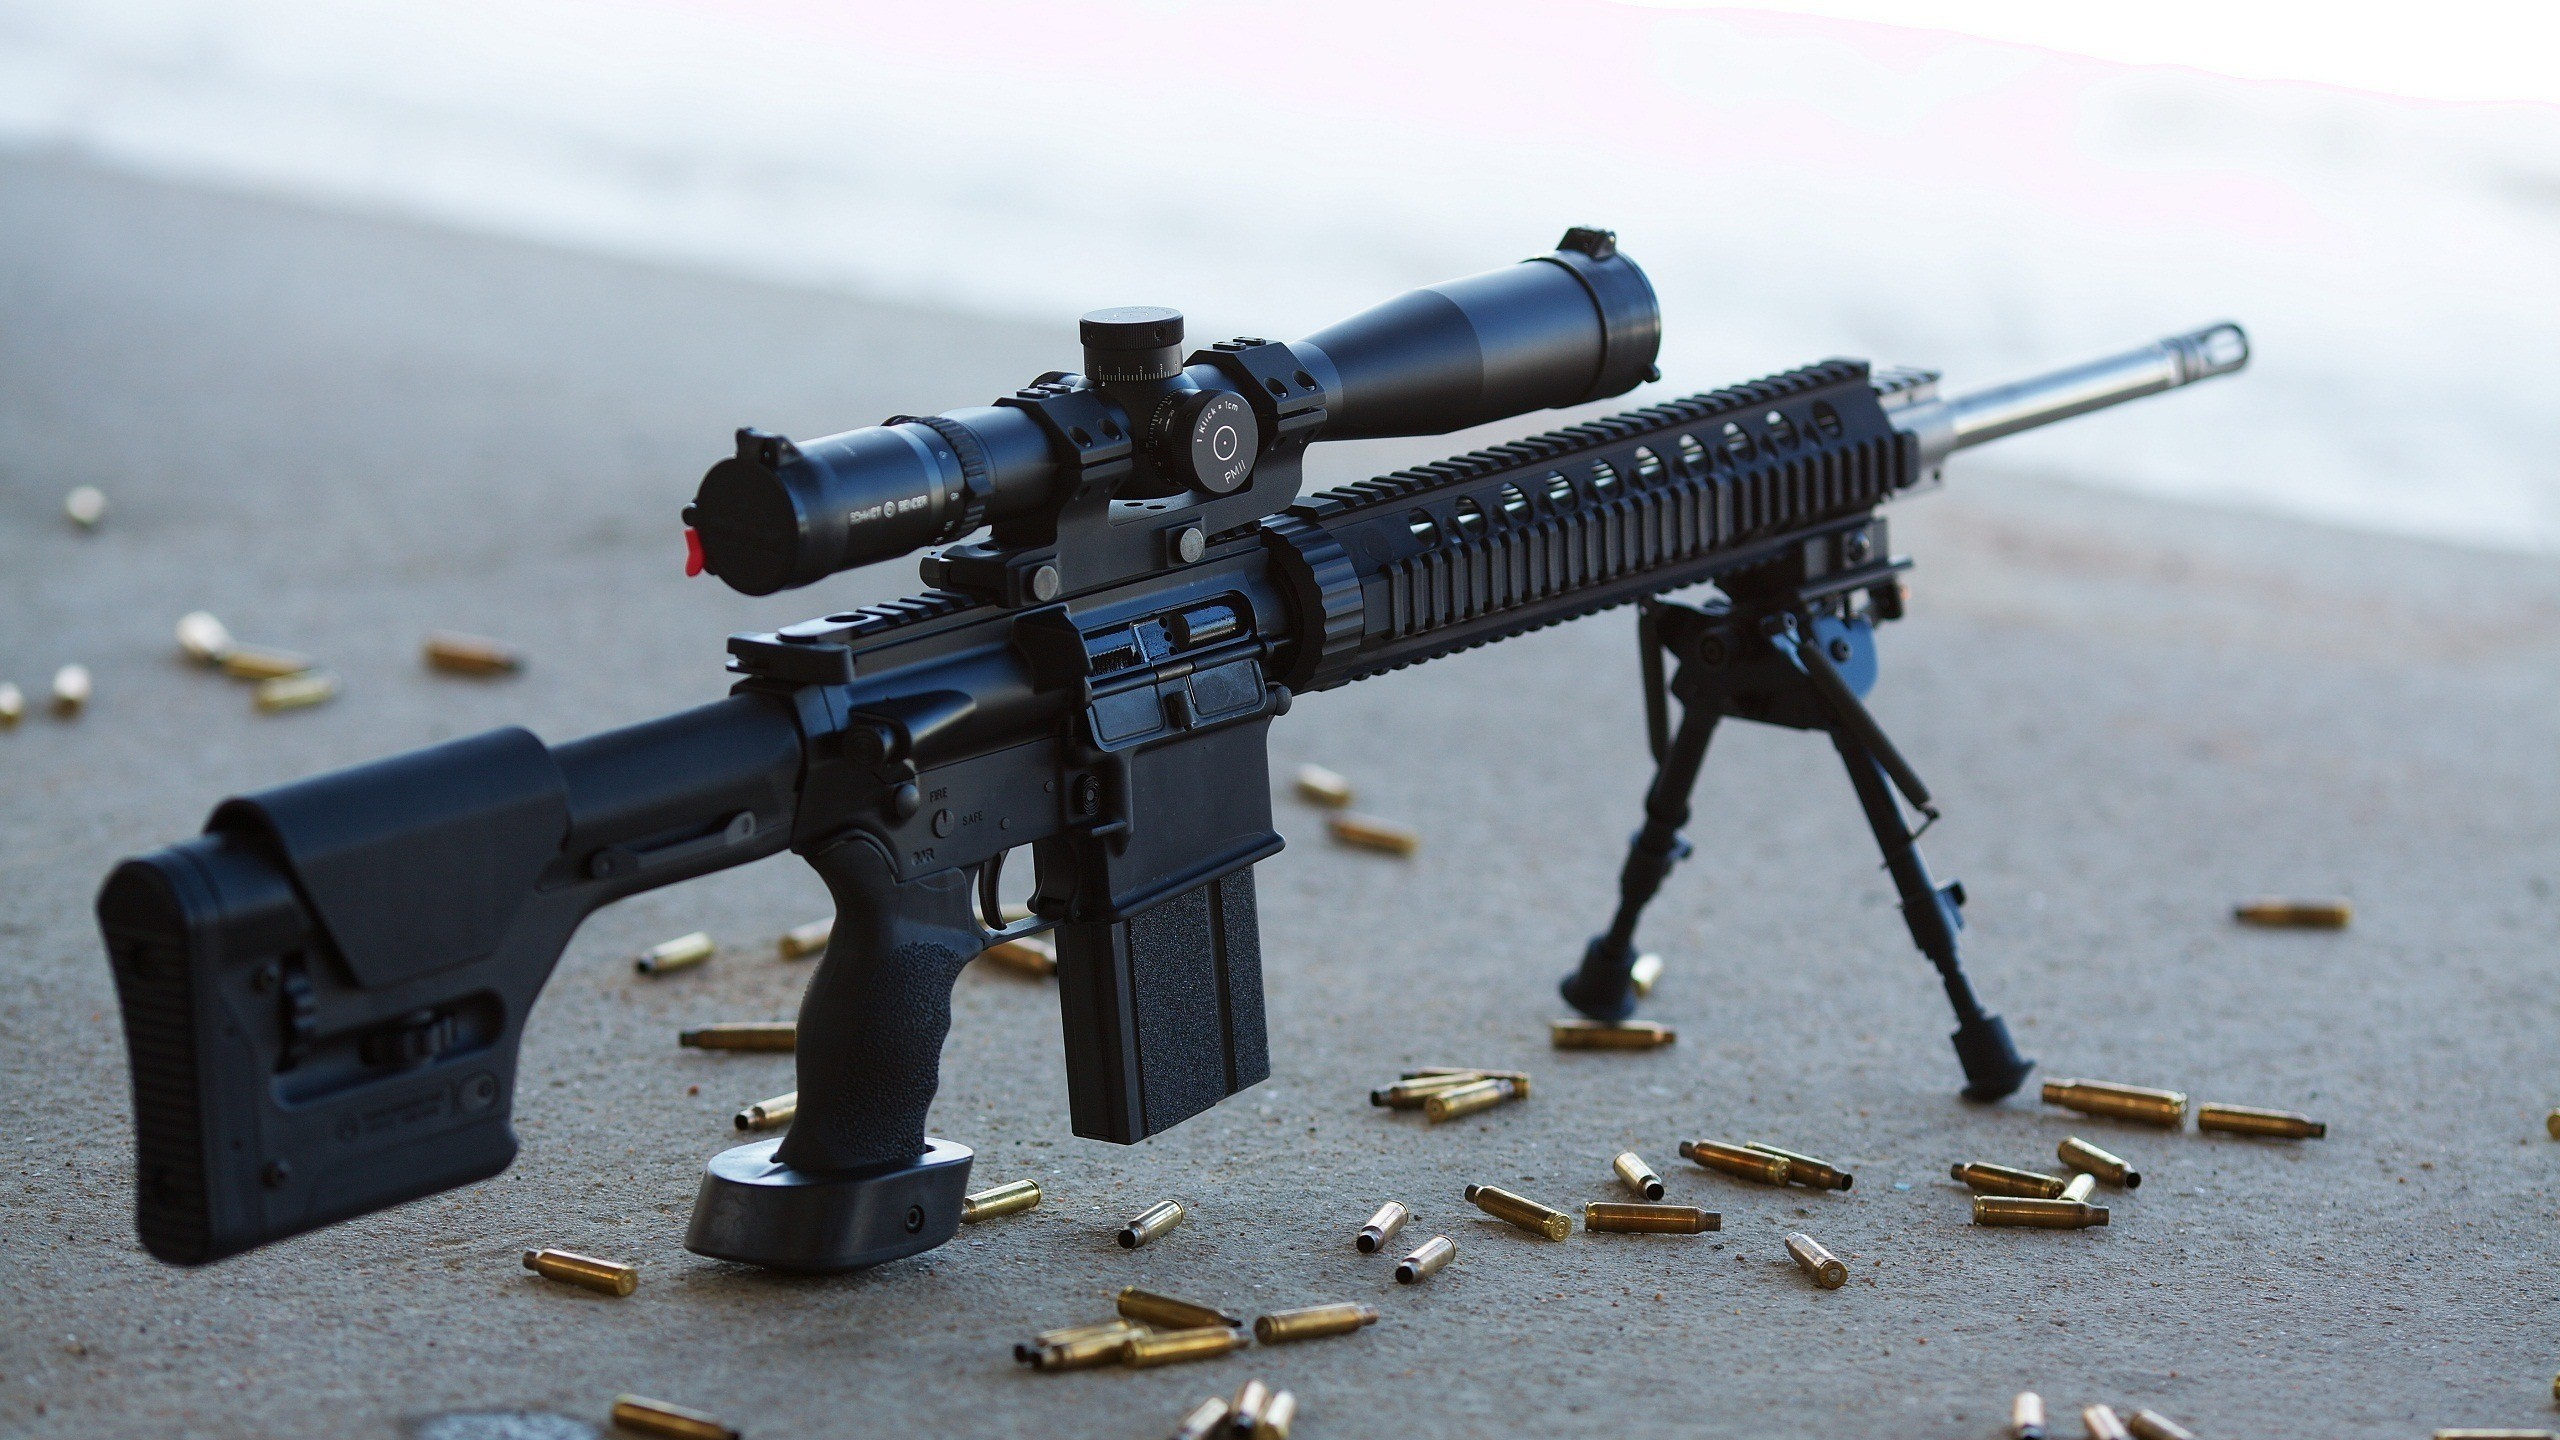 Feuerwaffe, Gewehr, STURMGEWEHR, Trigger, Maschinengewehr. Wallpaper in 2560x1440 Resolution